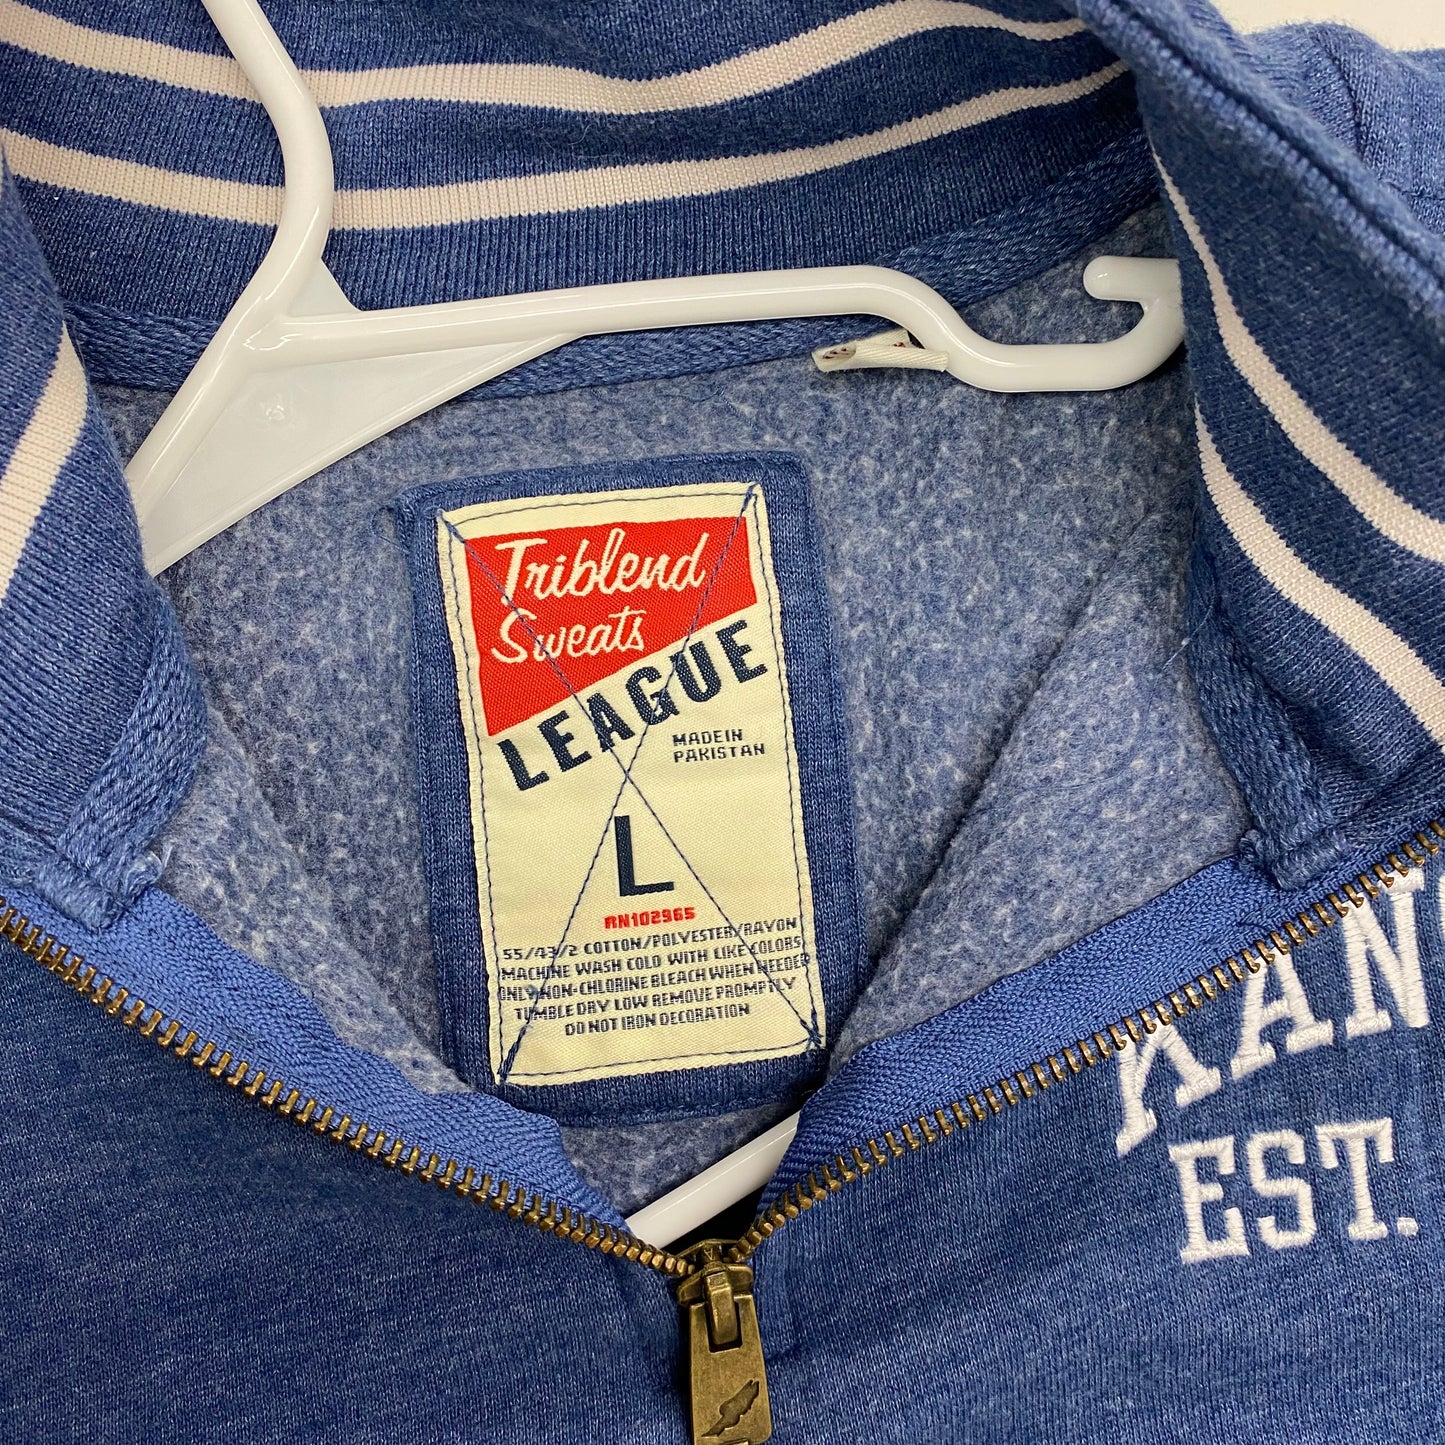 League Brand ‘KANSAS’ Pullover Sweatshirt Size L Blue 1/4 Zip L/s Tri-Blend EUC